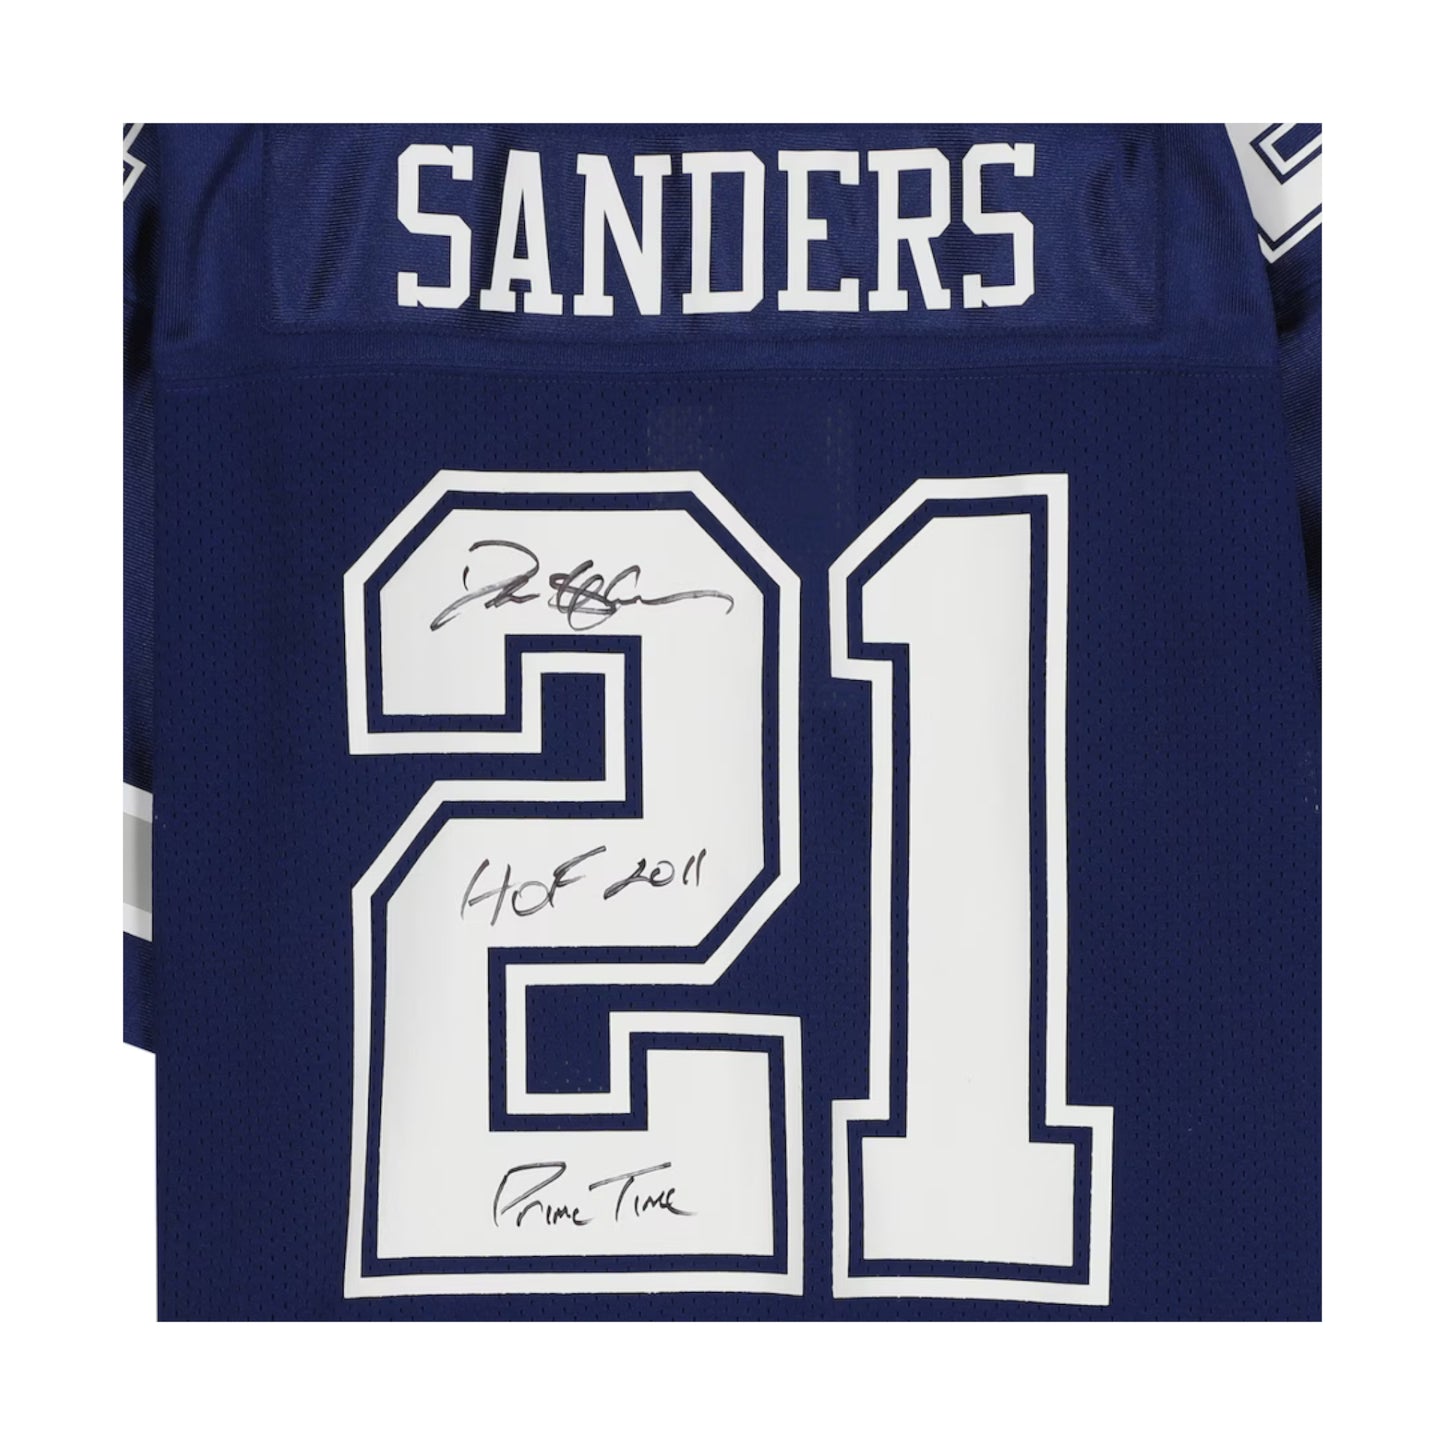 Fanatics Authentic Deion Sanders Autographed "HOF 2011/Prime Time" Dallas Cowboys Navy Authentic Jersey